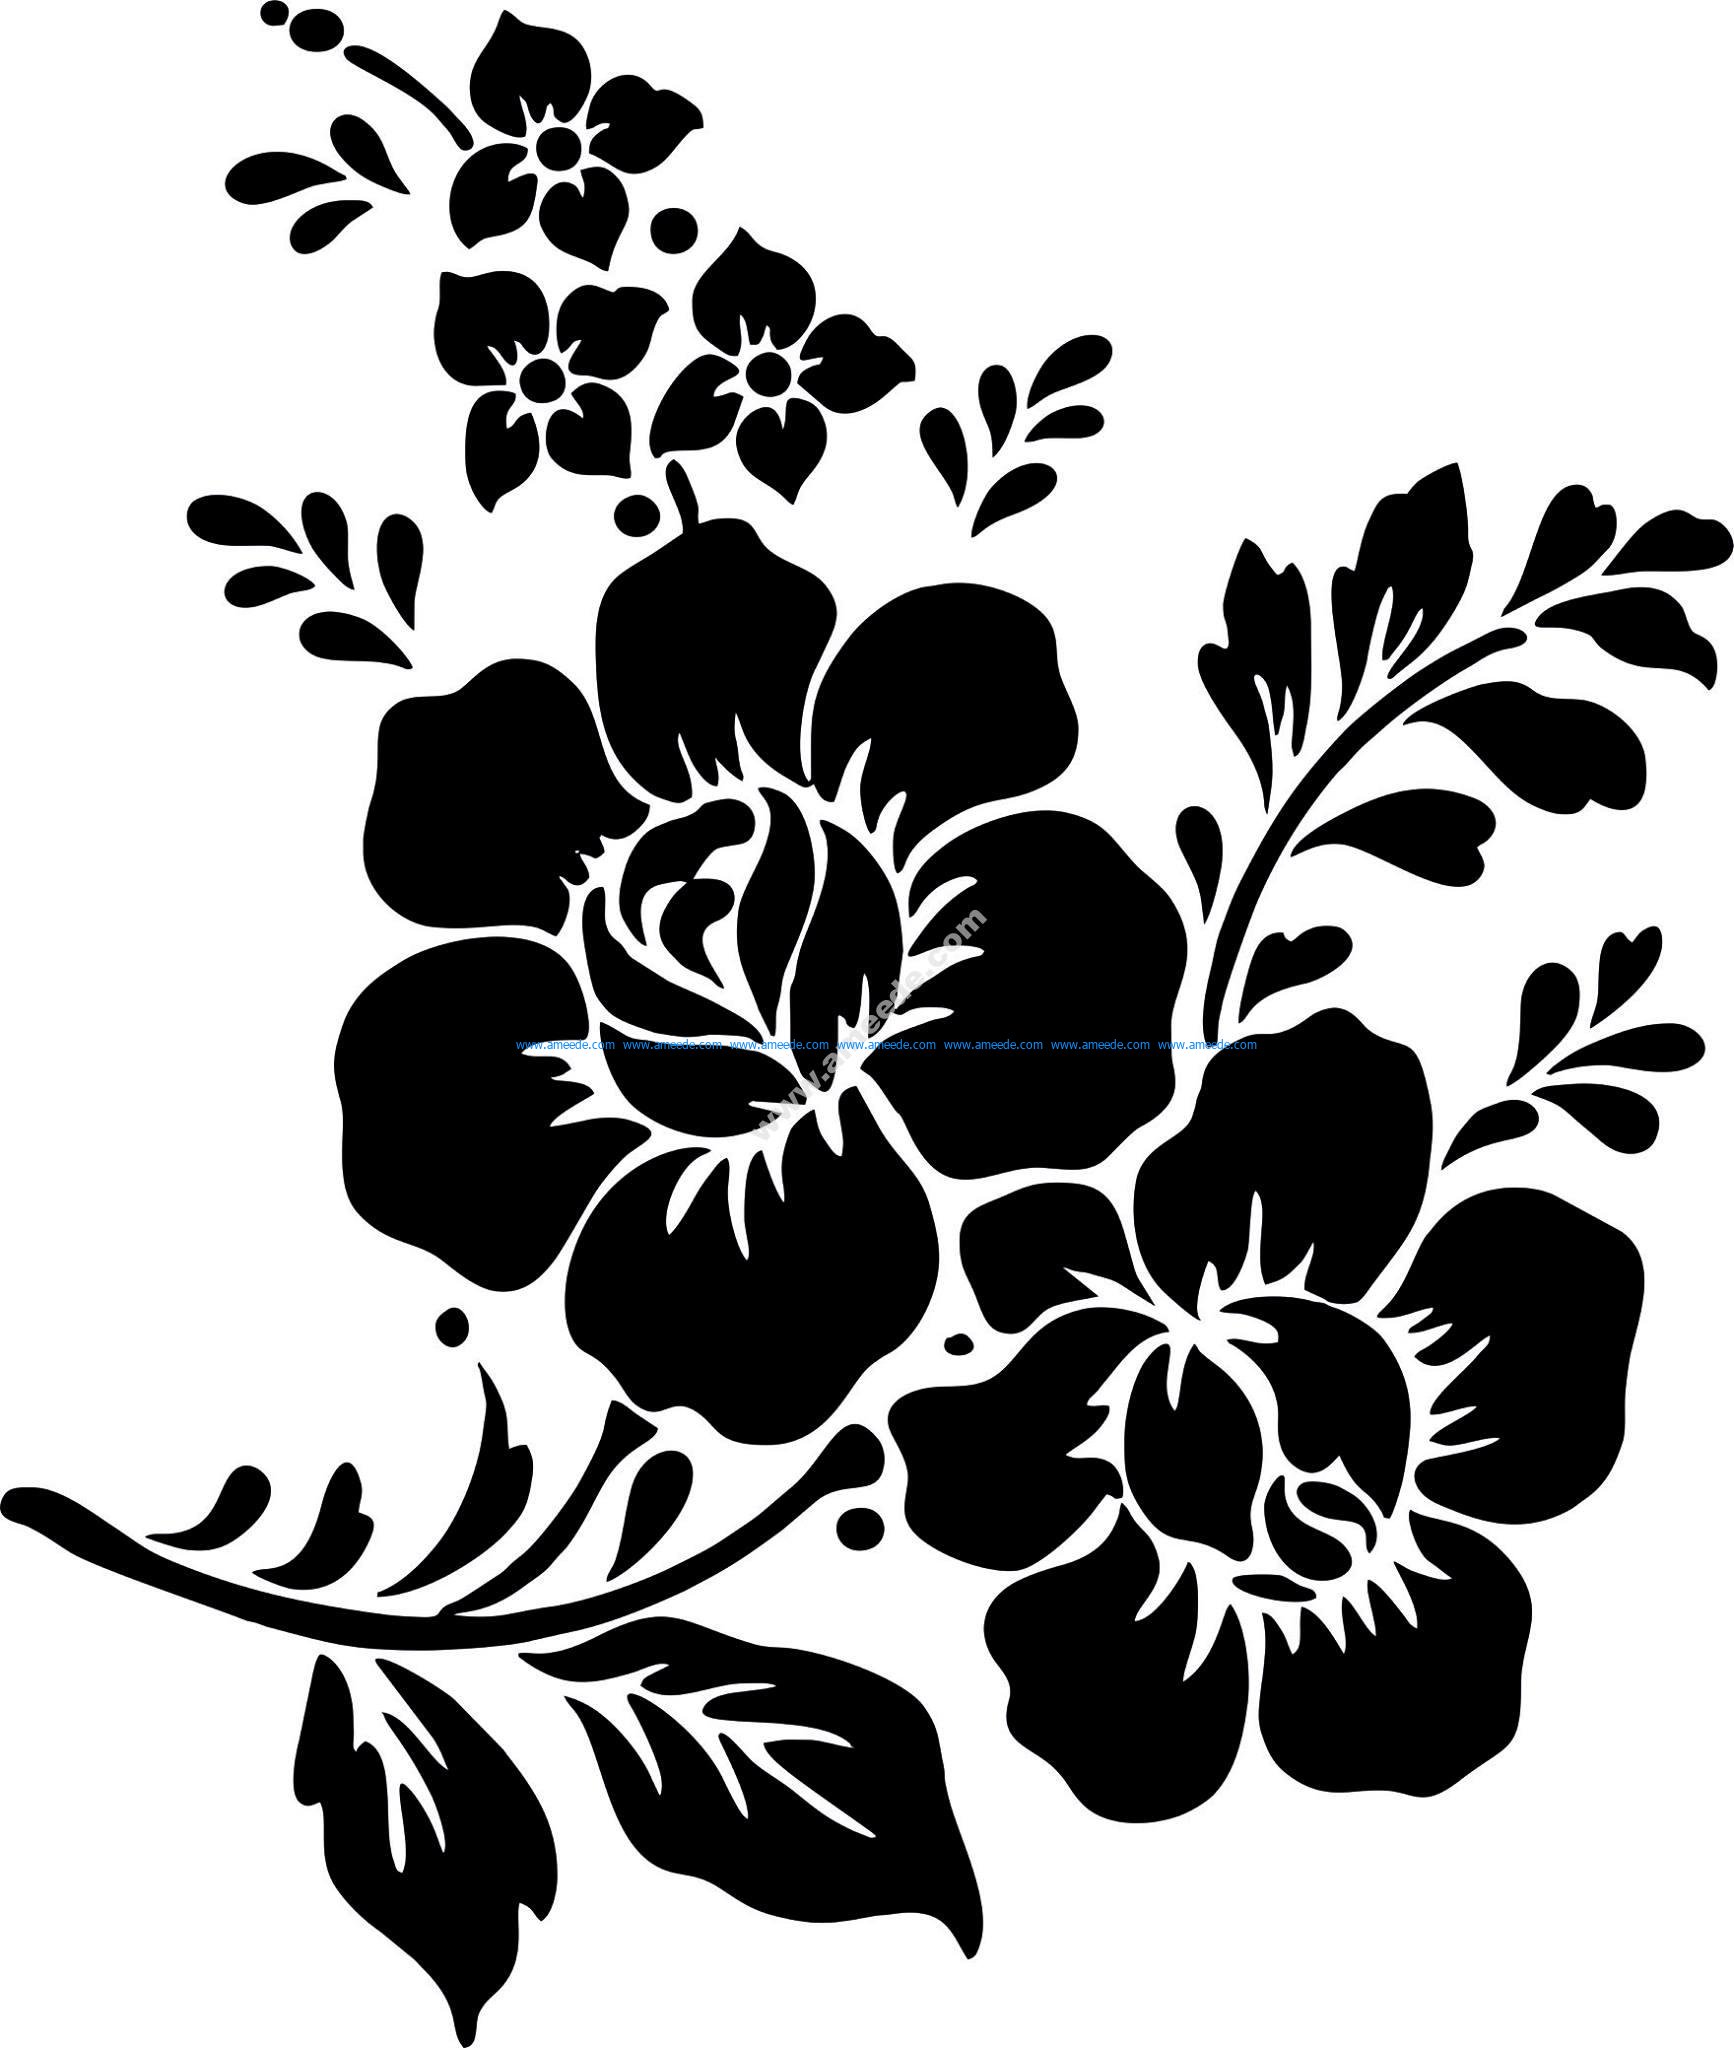 Rose Flower Vector Vector Art jpg – Download Vector